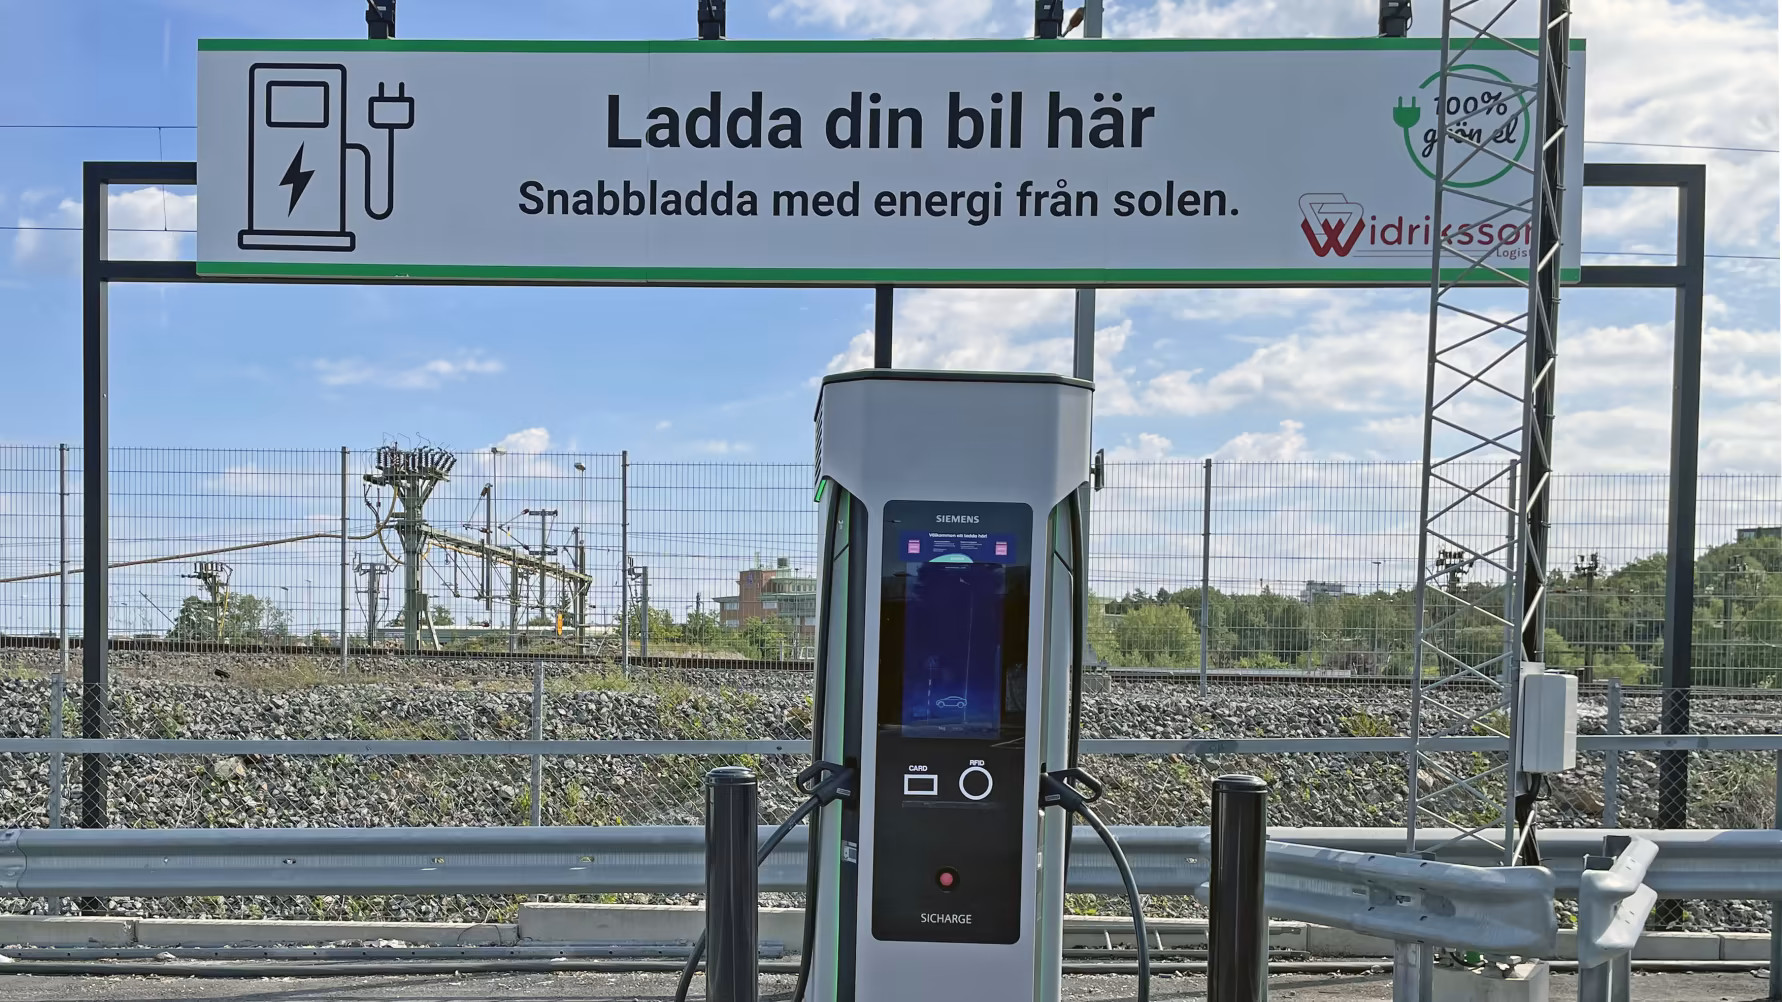 Laddstationen i Västberga kommer även att vara publik. Foto: Widriksson Logistik.